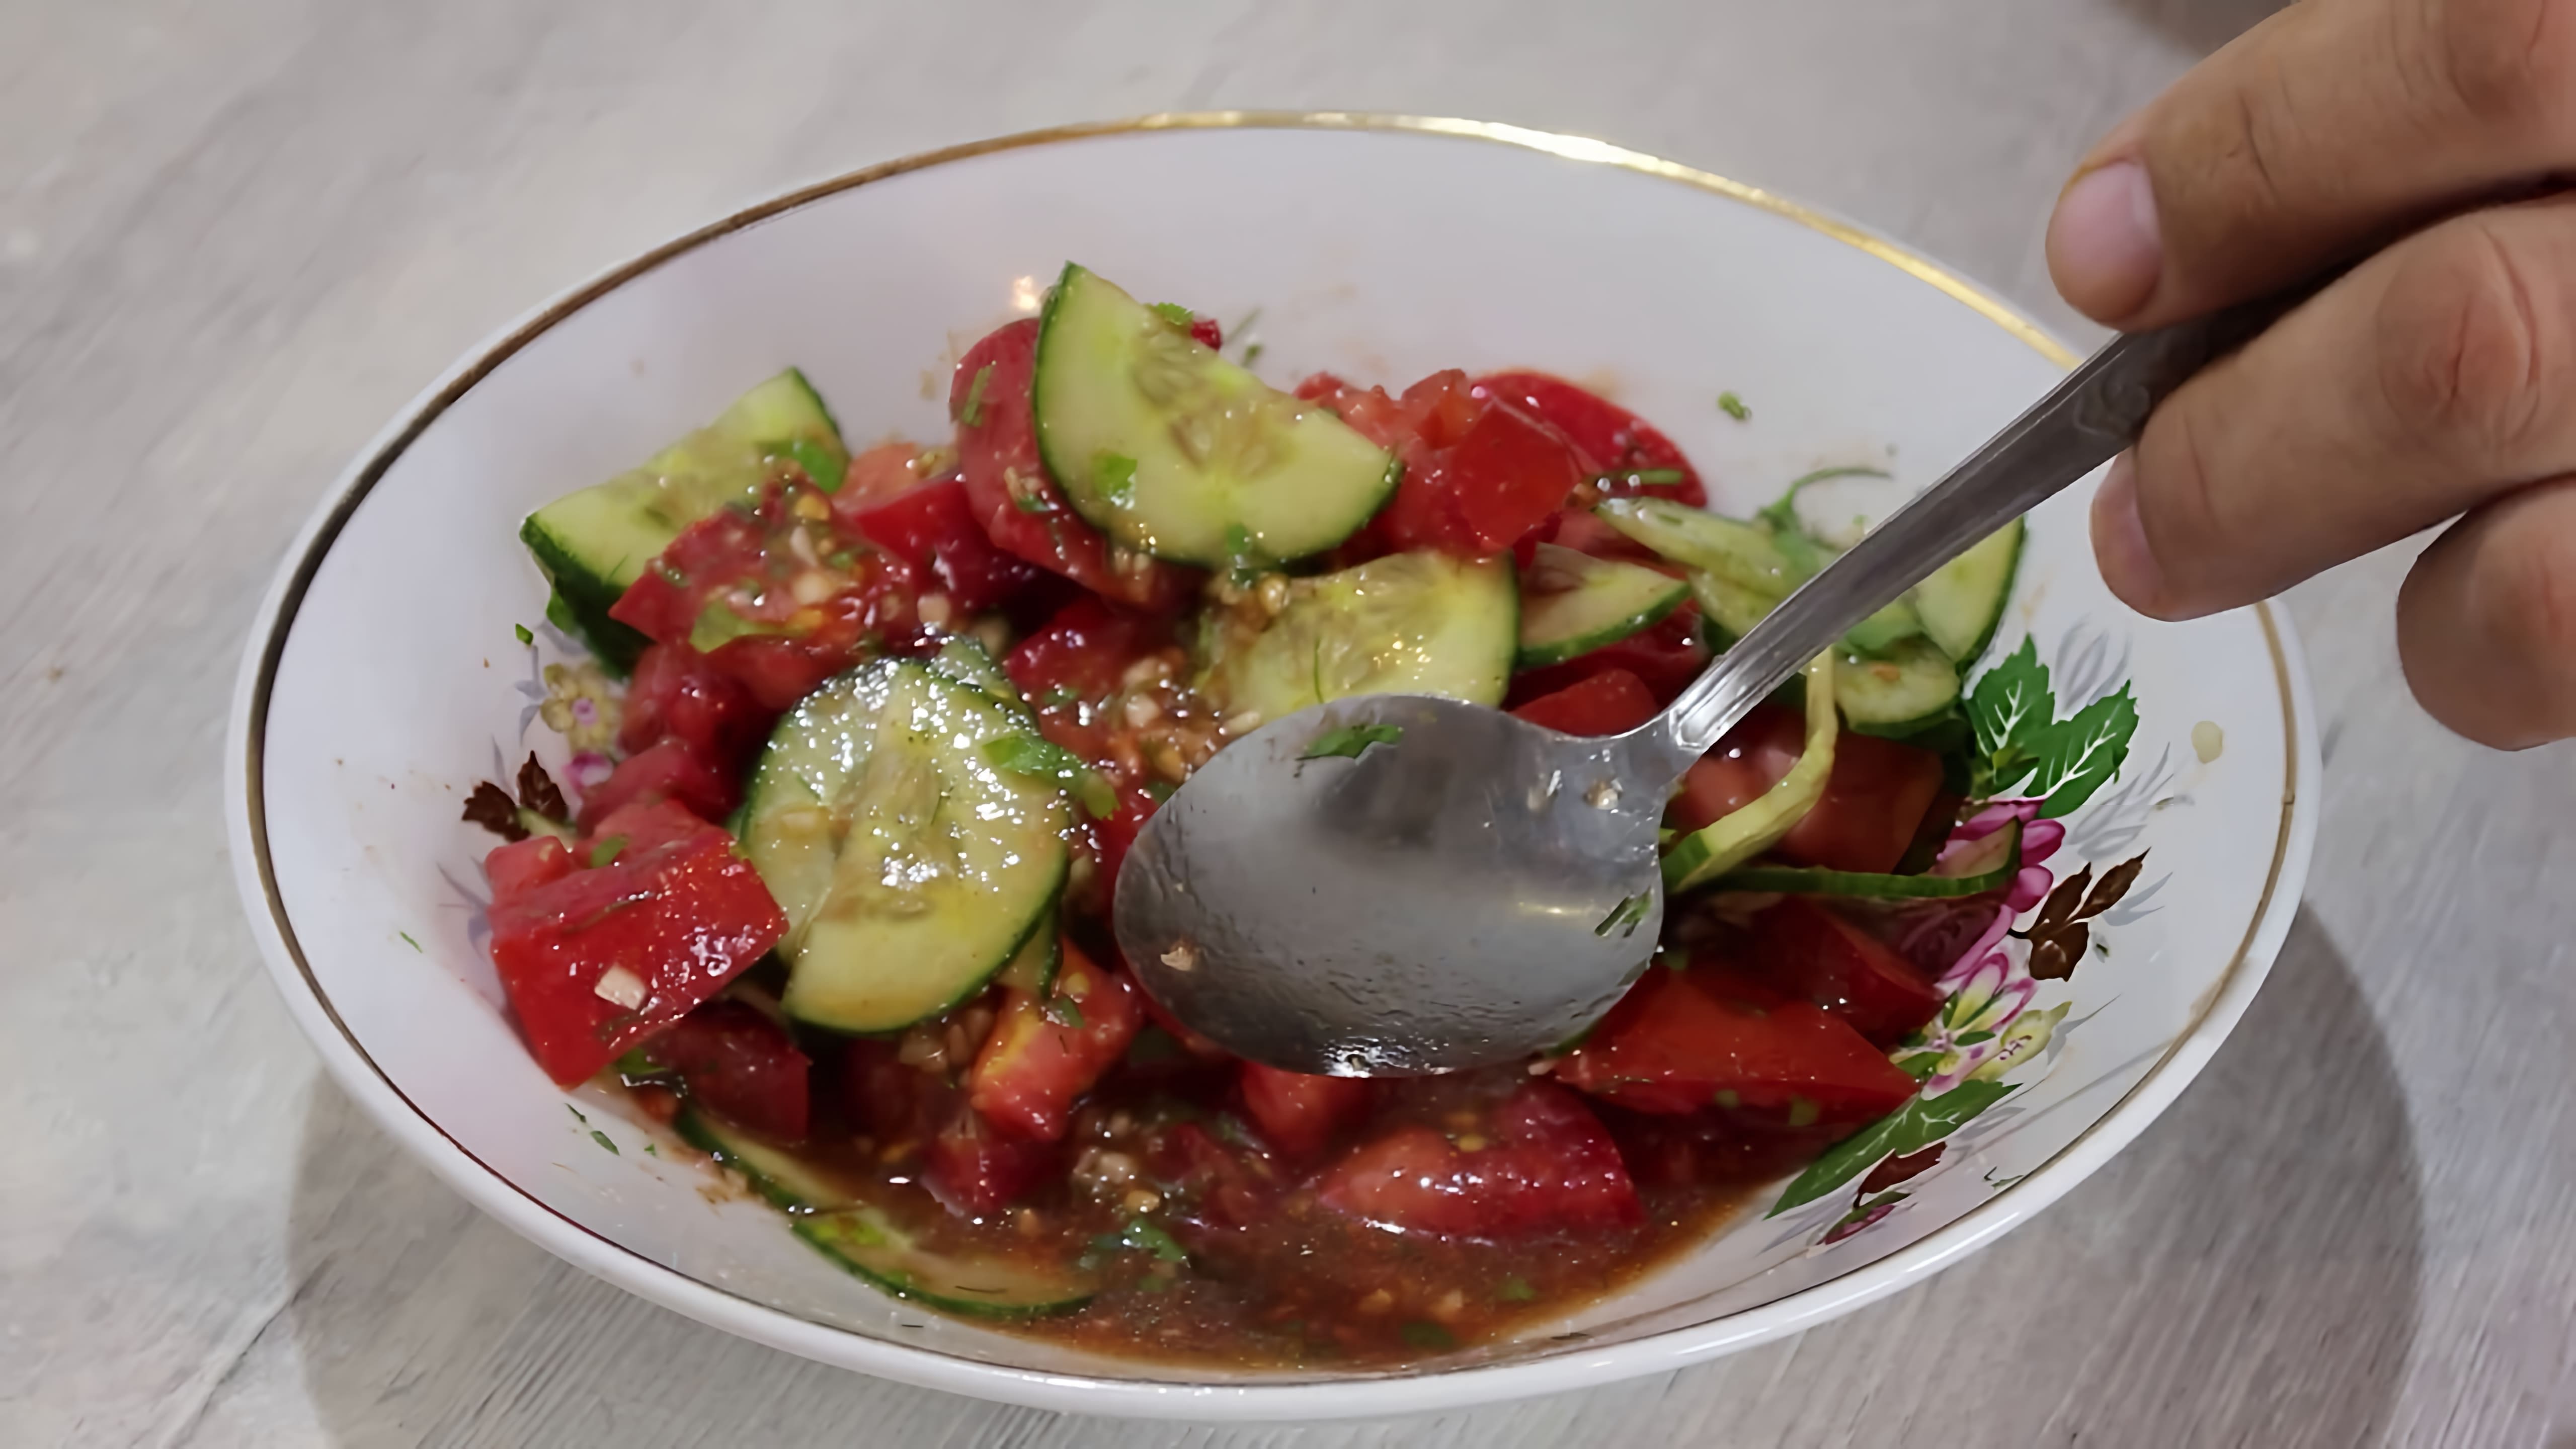 Салат из помидоров и огурцов с соевым соусом, кориандром и чесноком - это вкусное и полезное блюдо, которое можно приготовить в домашних условиях